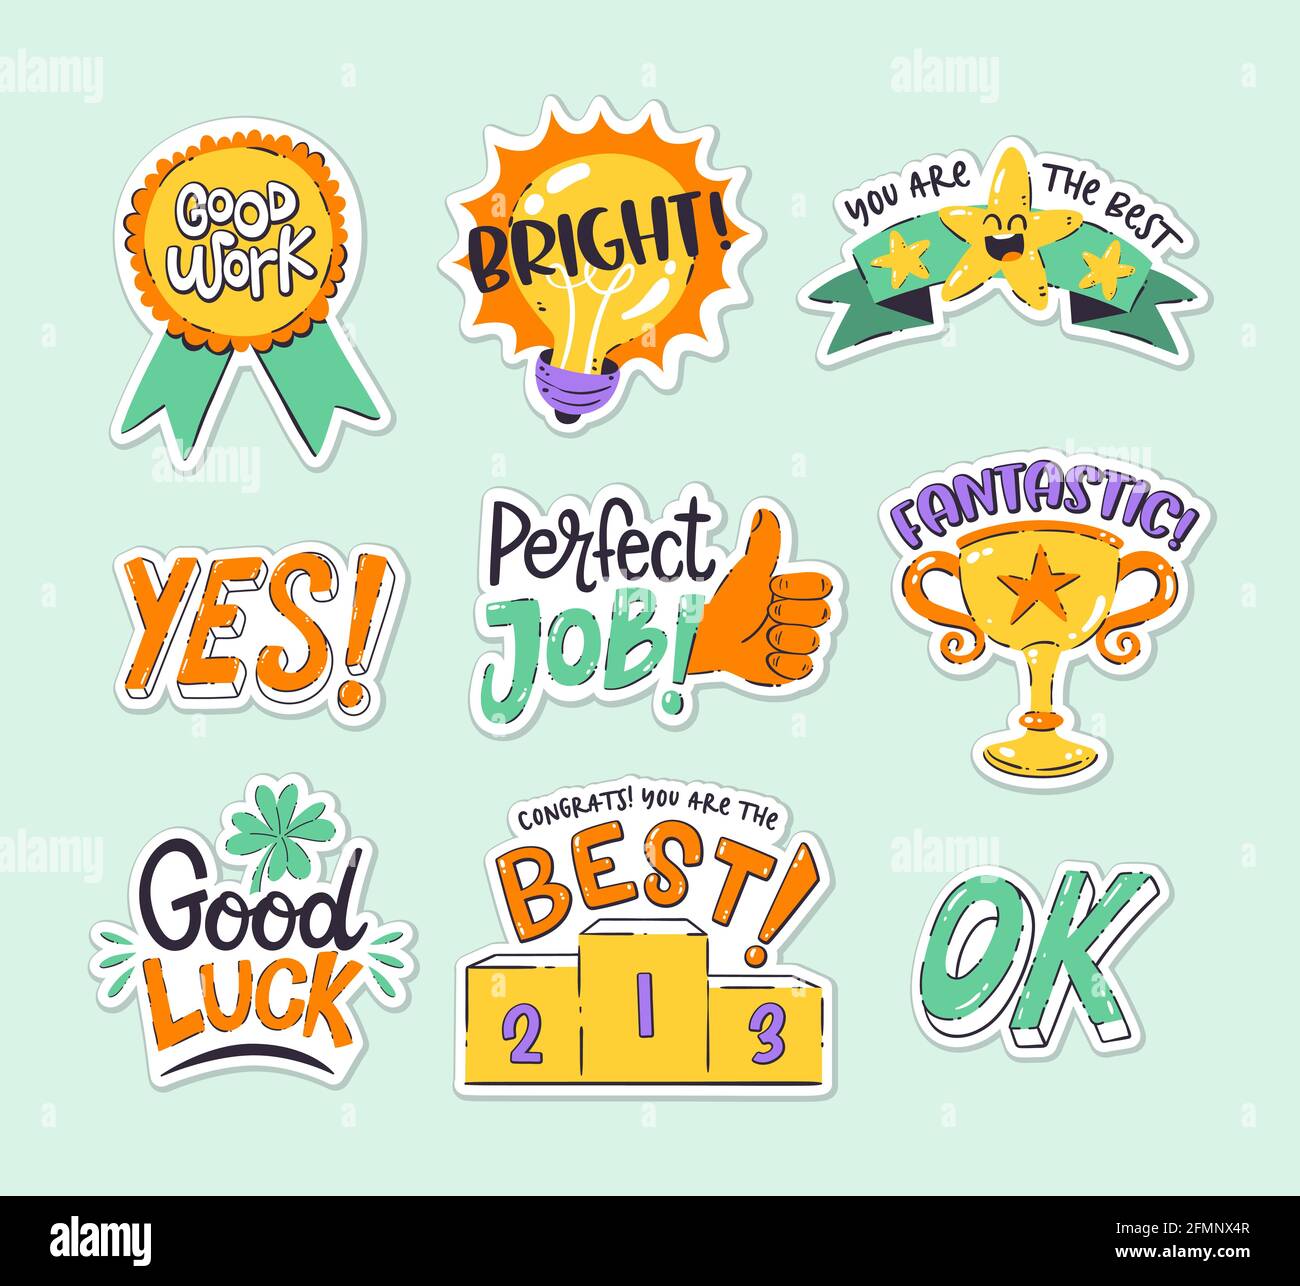 Good Job Reward Stickers for Teachers